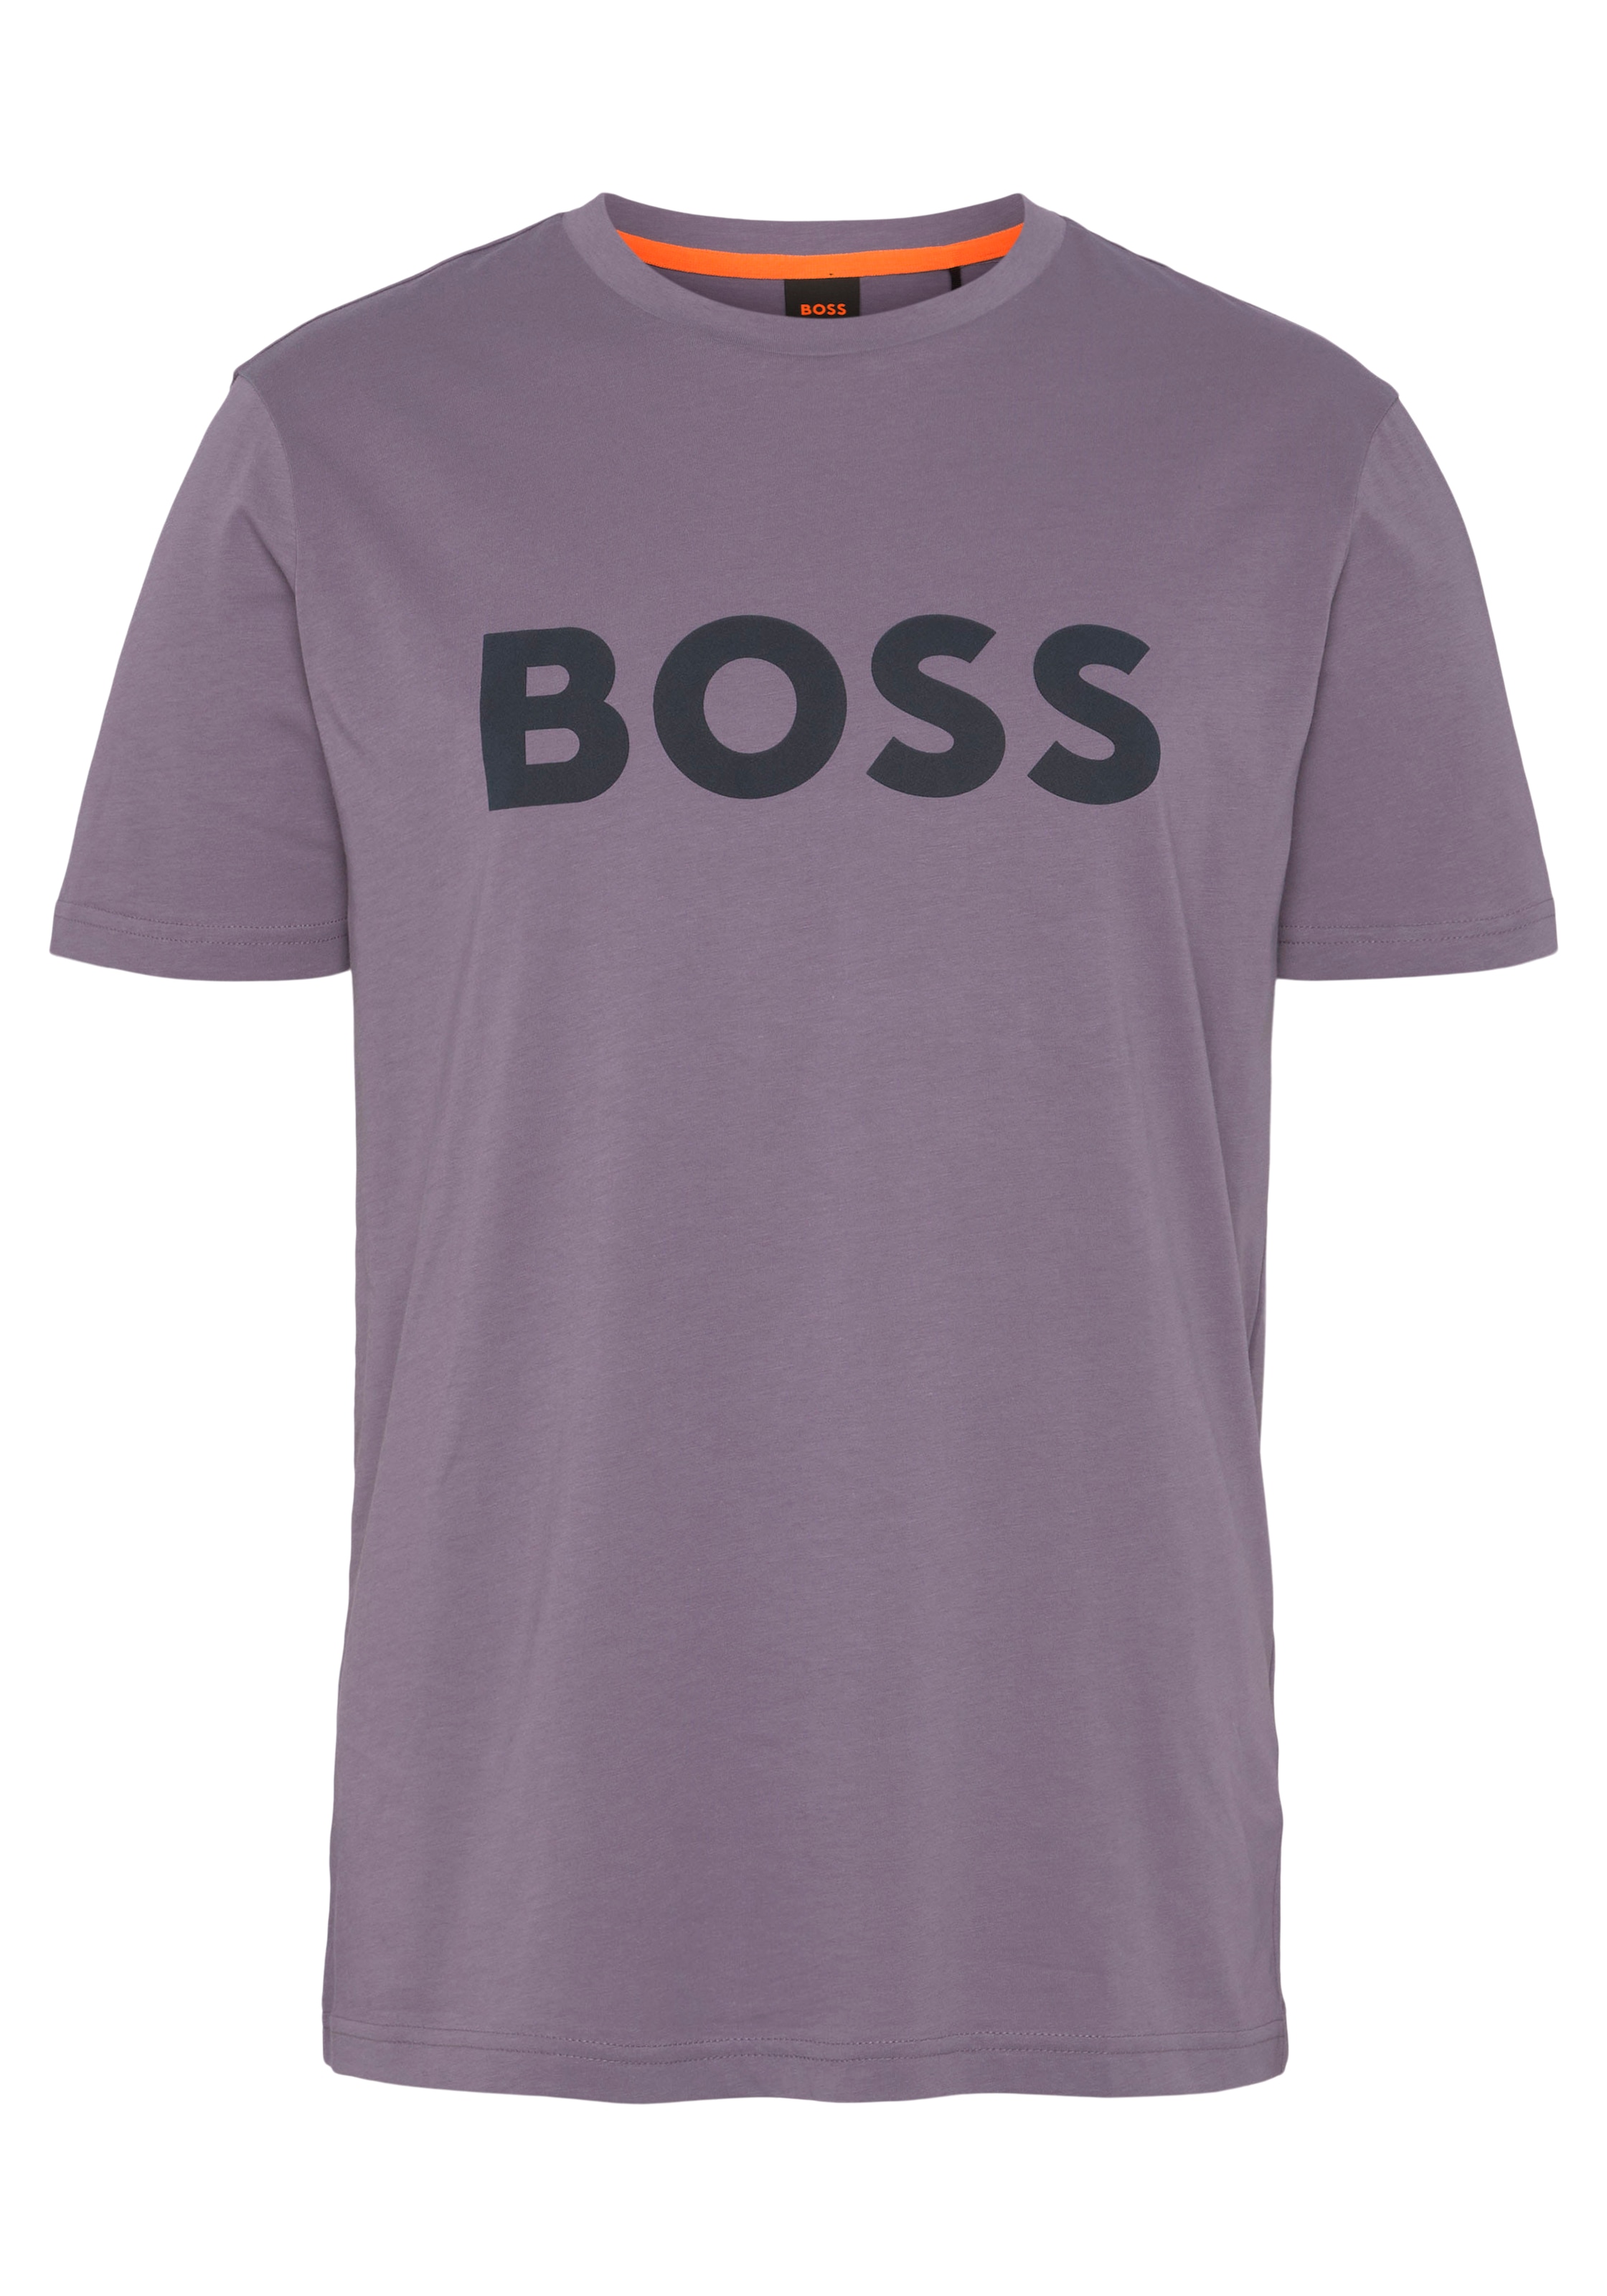 BOSS 01«, online der großem bei BOSS mit »Thinking T-Shirt auf Druck Brust 1 10246016 ORANGE